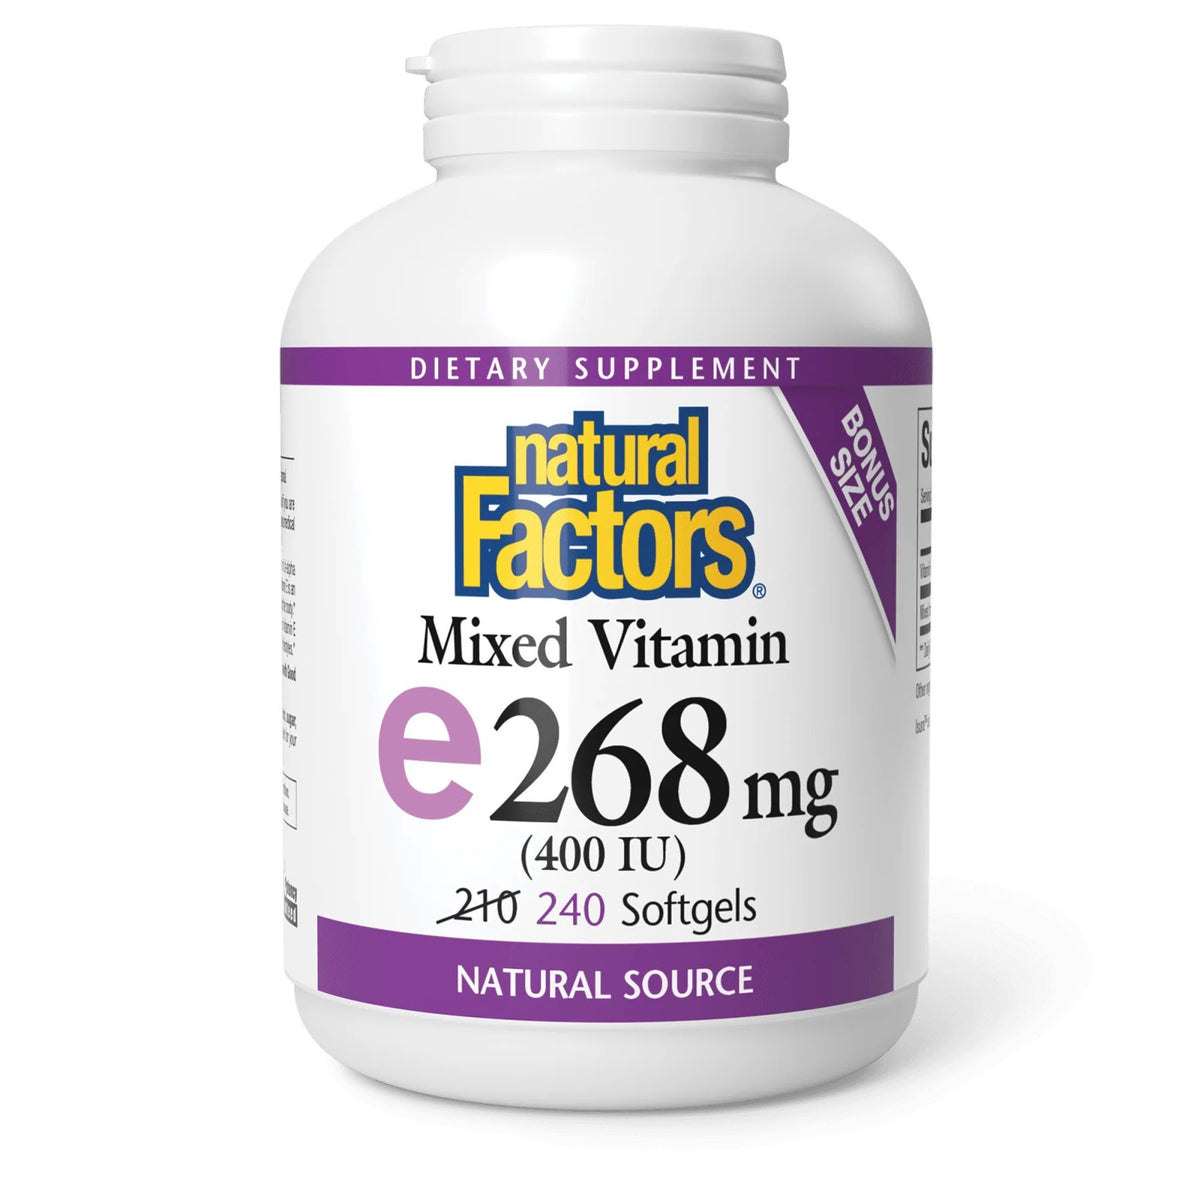 Natural Factors Mixed Vitamin E 268 mg (400 IU) 240 Softgel